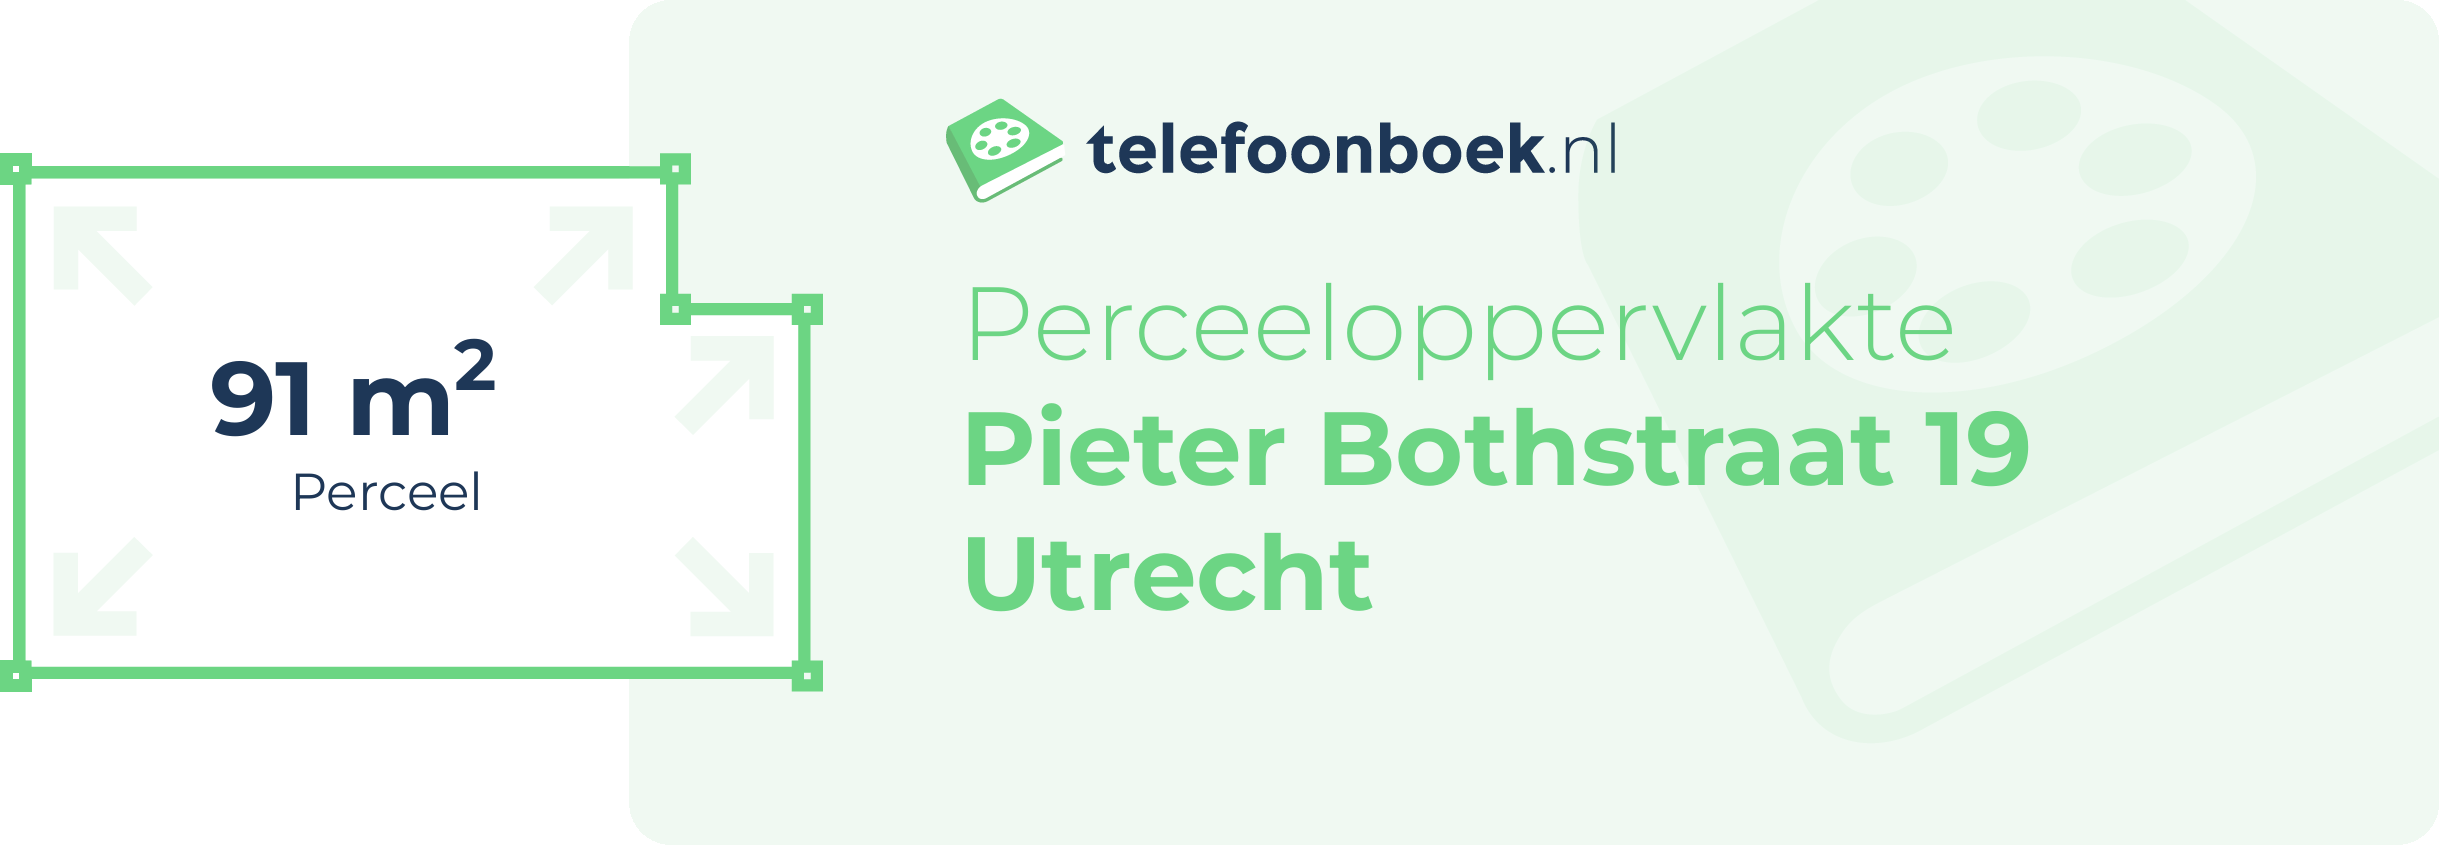 Perceeloppervlakte Pieter Bothstraat 19 Utrecht